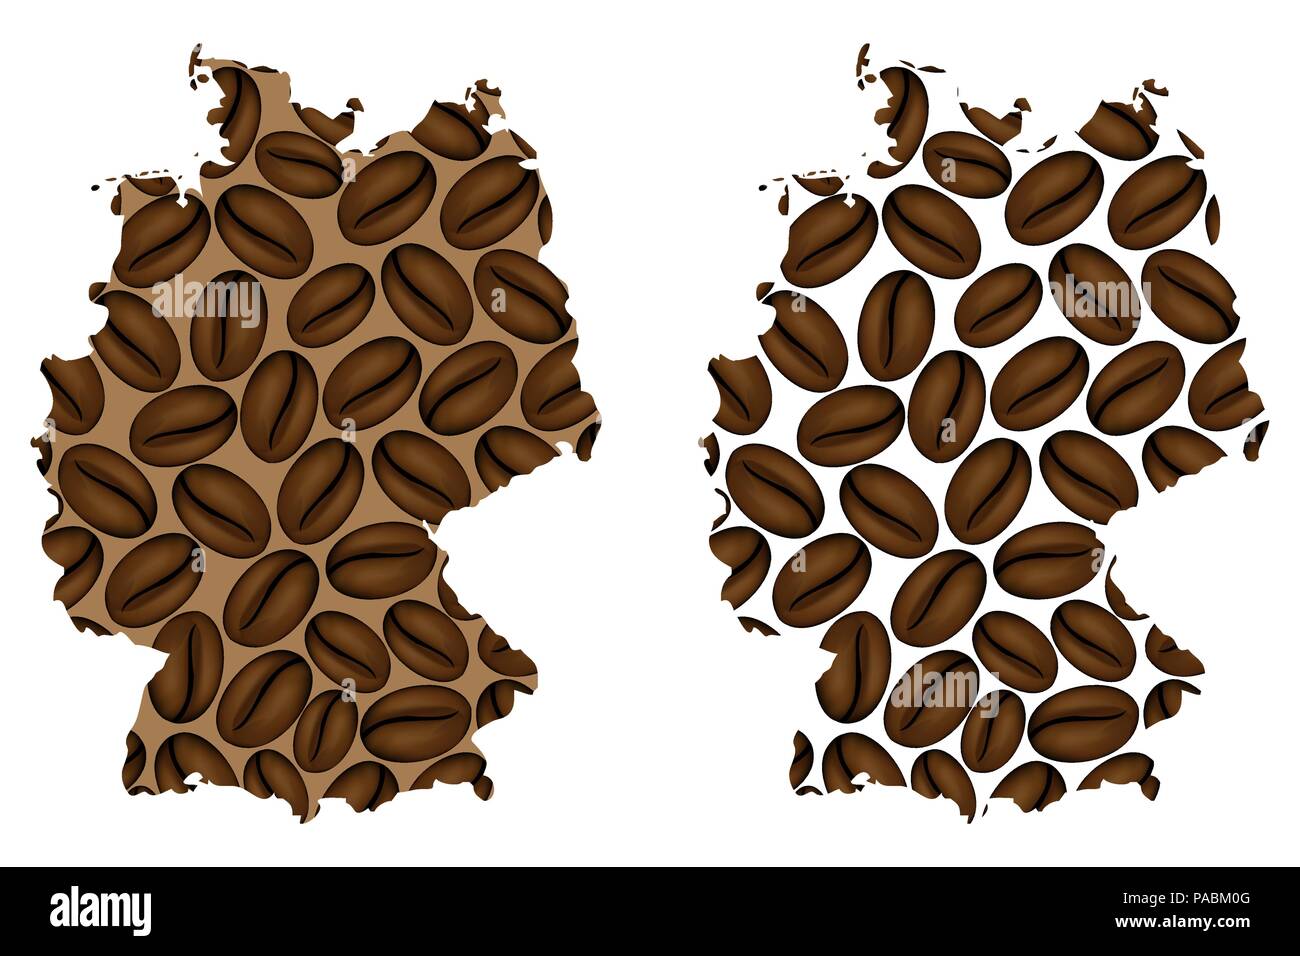 Deutschland - Karte von Coffee Bean, Bundesrepublik Deutschland Karte aus Kaffeebohnen, Stock Vektor